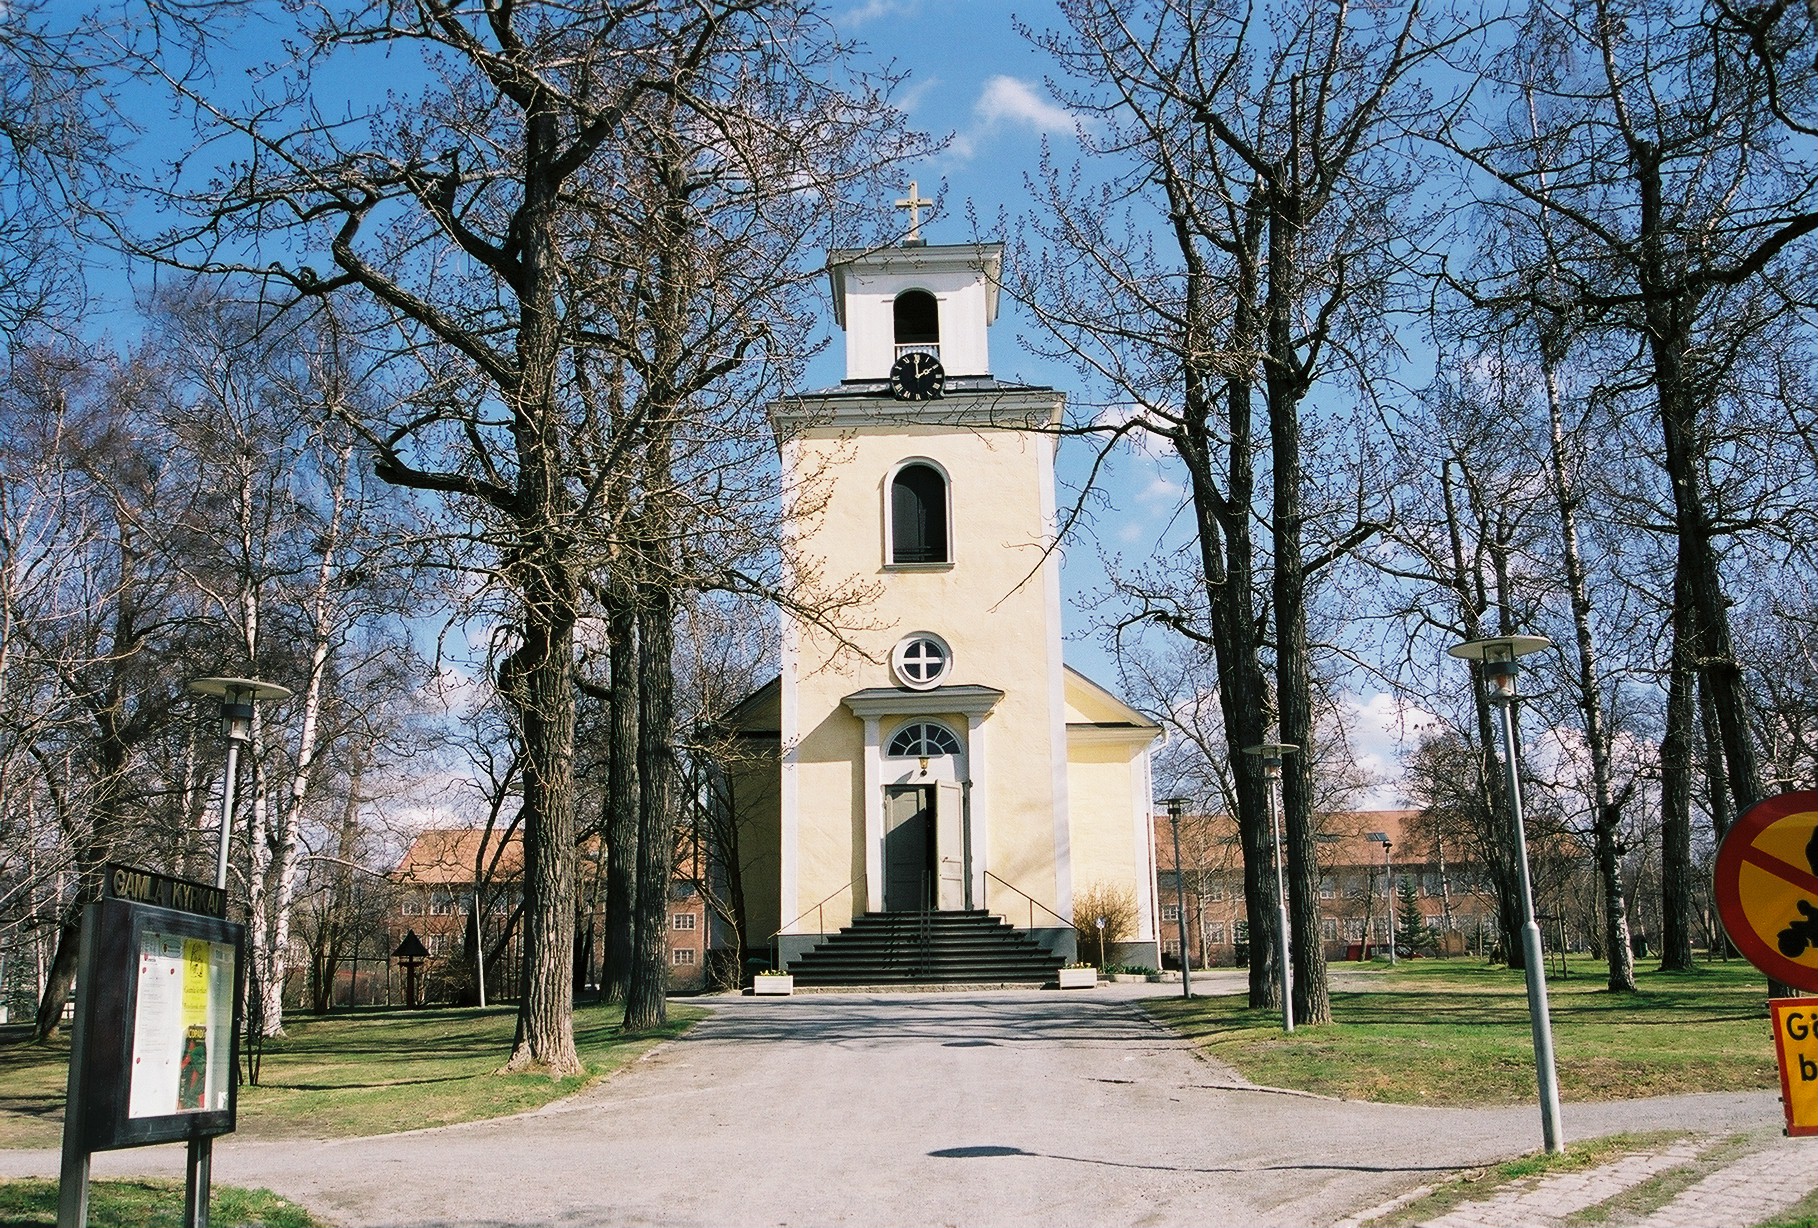 Gamla kyrkan med omgivande kyrkogård/kyrkotomt, vy från väster.

Bilderna är tagna av Christina Persson & Isa Lindkvist, bebyggelseantikvarier vid Jämtlands läns museum, i samband med inventeringen, 2005-2006.